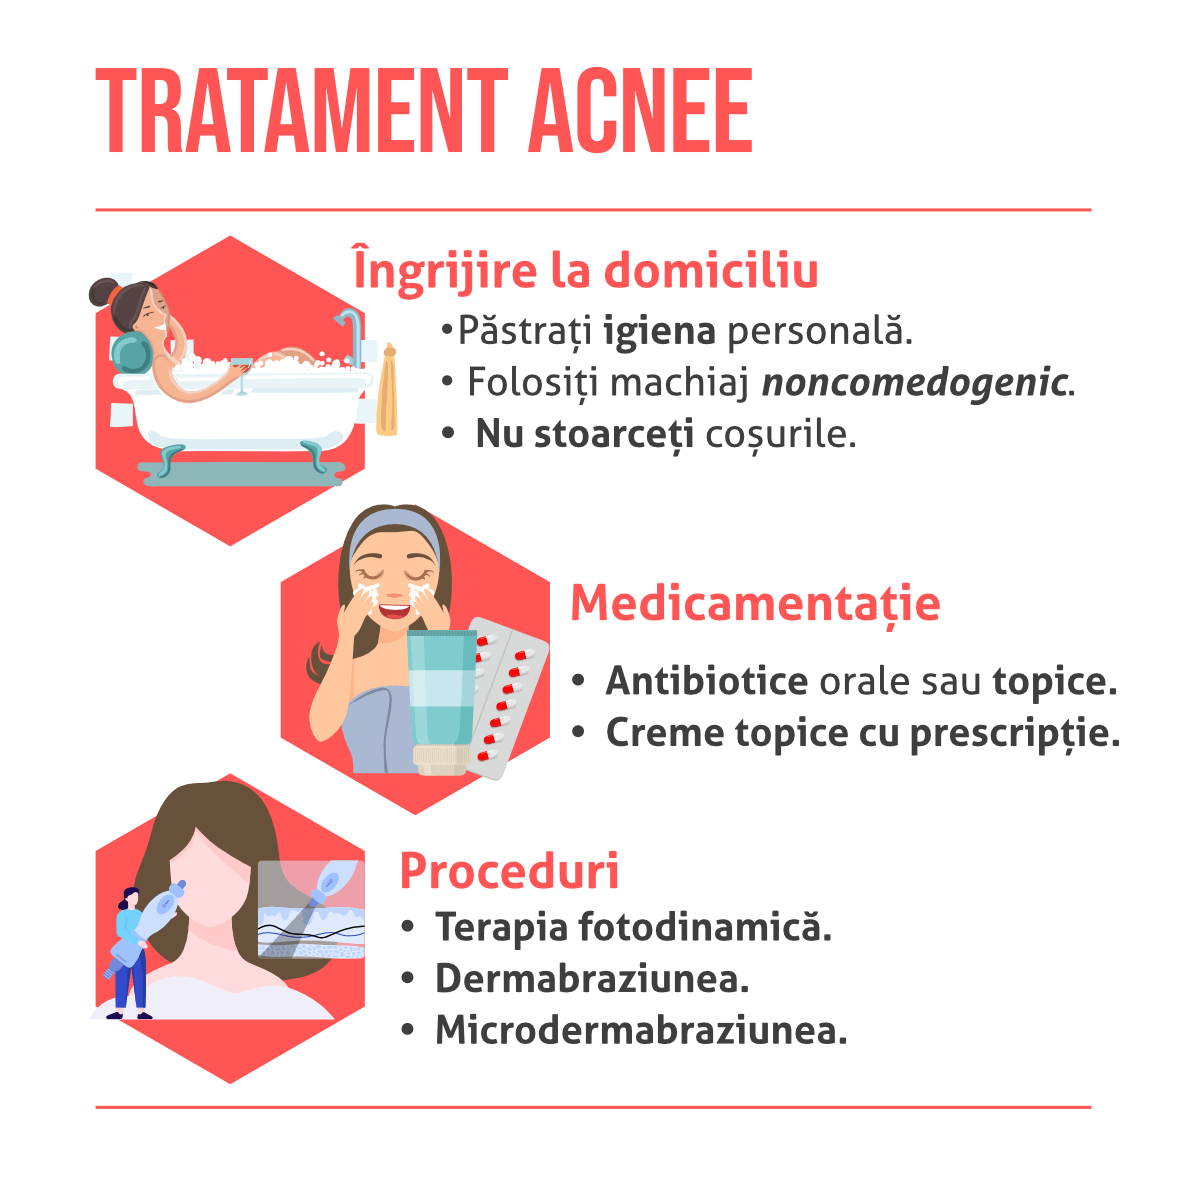 Totul despre acnee